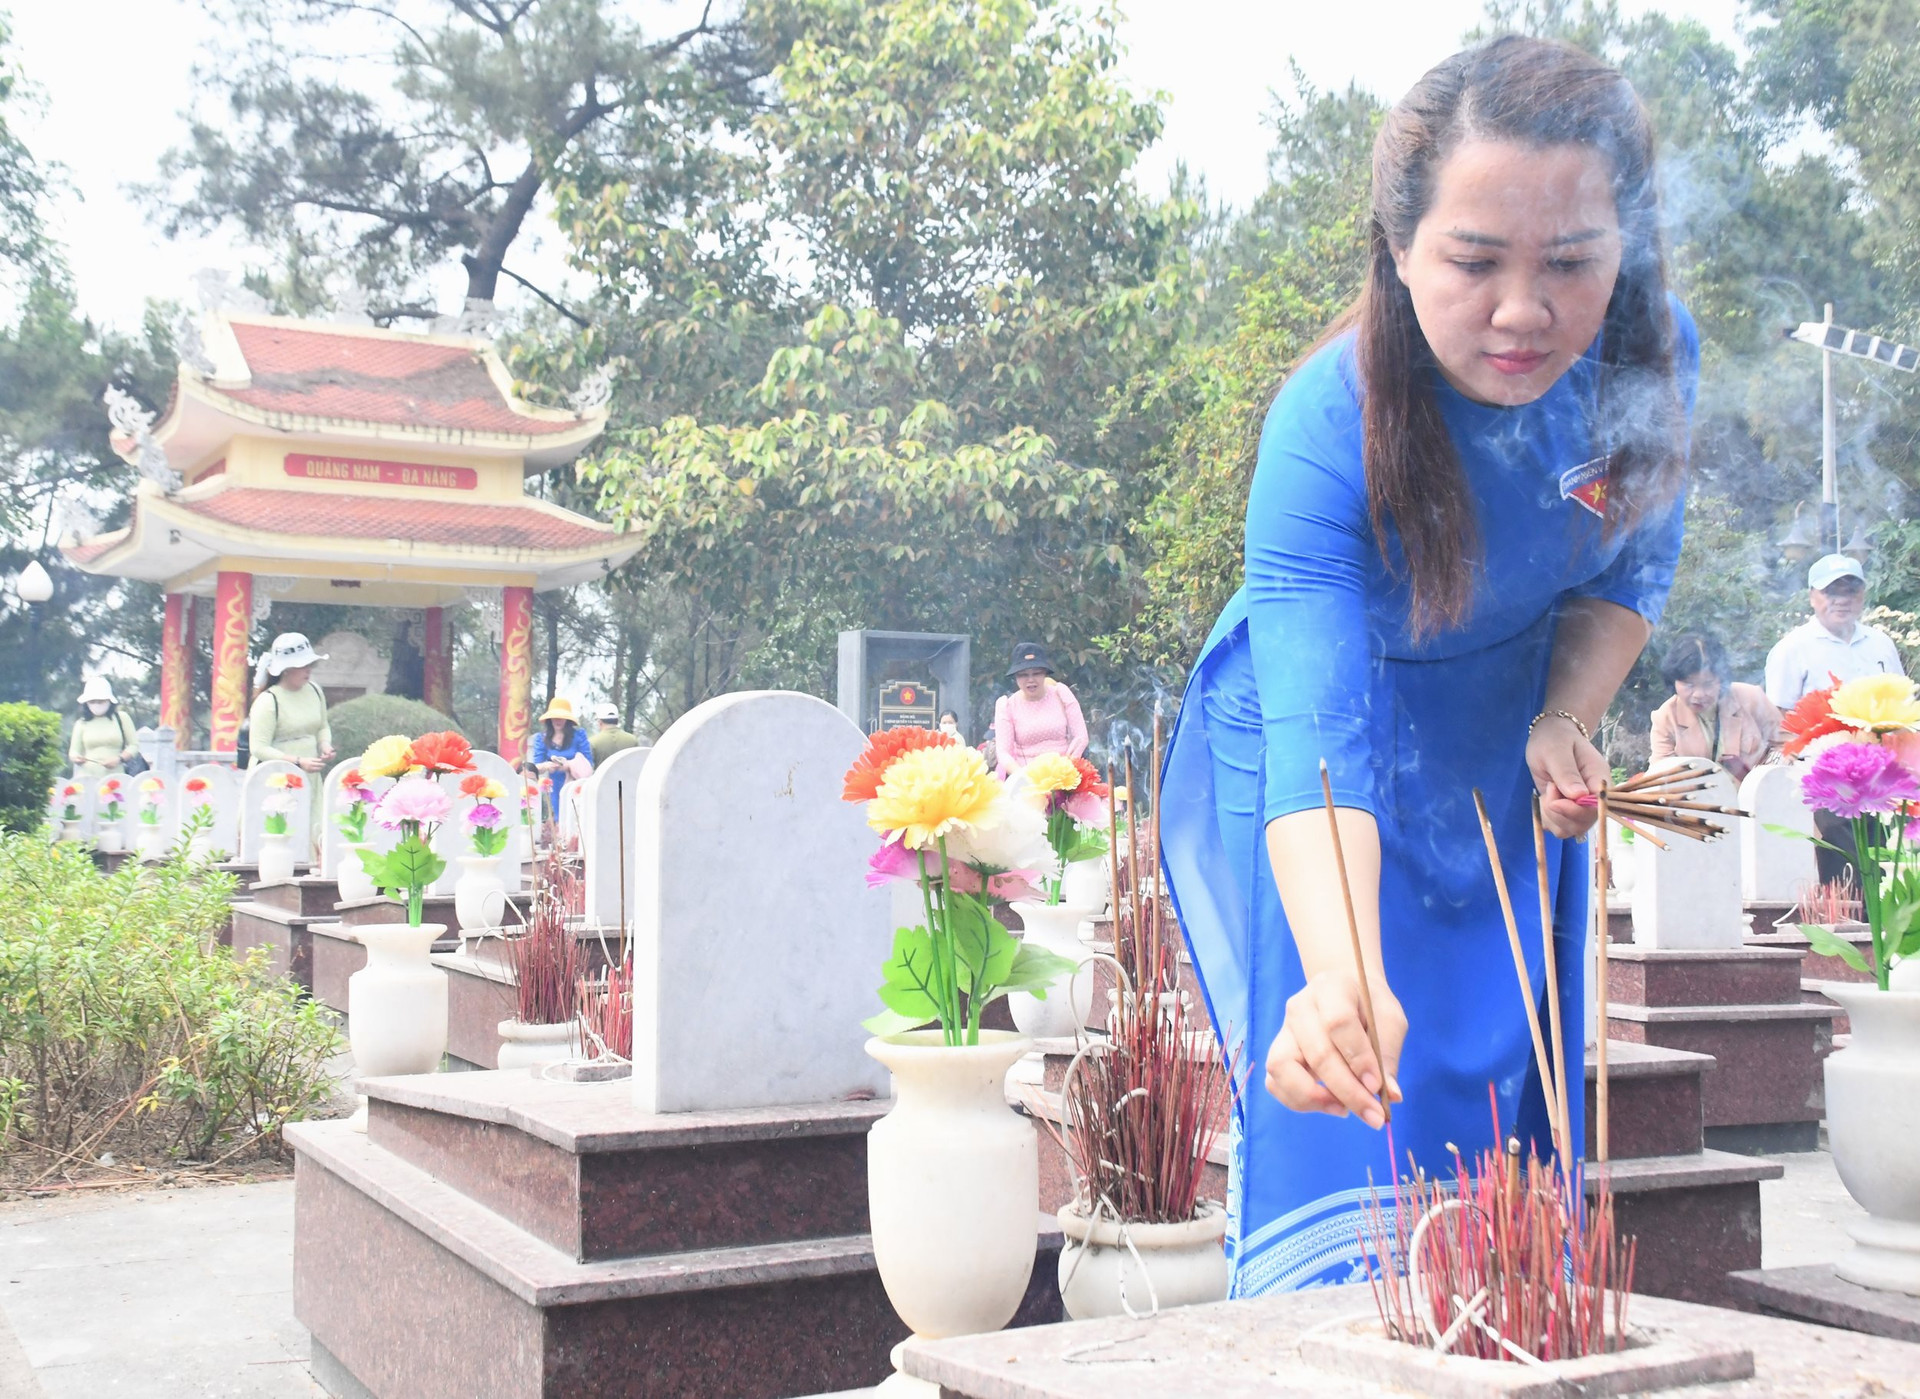 Đoàn đến viếng, thắp nhang từng ngôi mộ các liệt sĩ có quê hương ở Quảng Nam – Đà Nẵng tại Nghĩa trang liệt sĩ quốc gia Trường Sơn. Ảnh: VB.